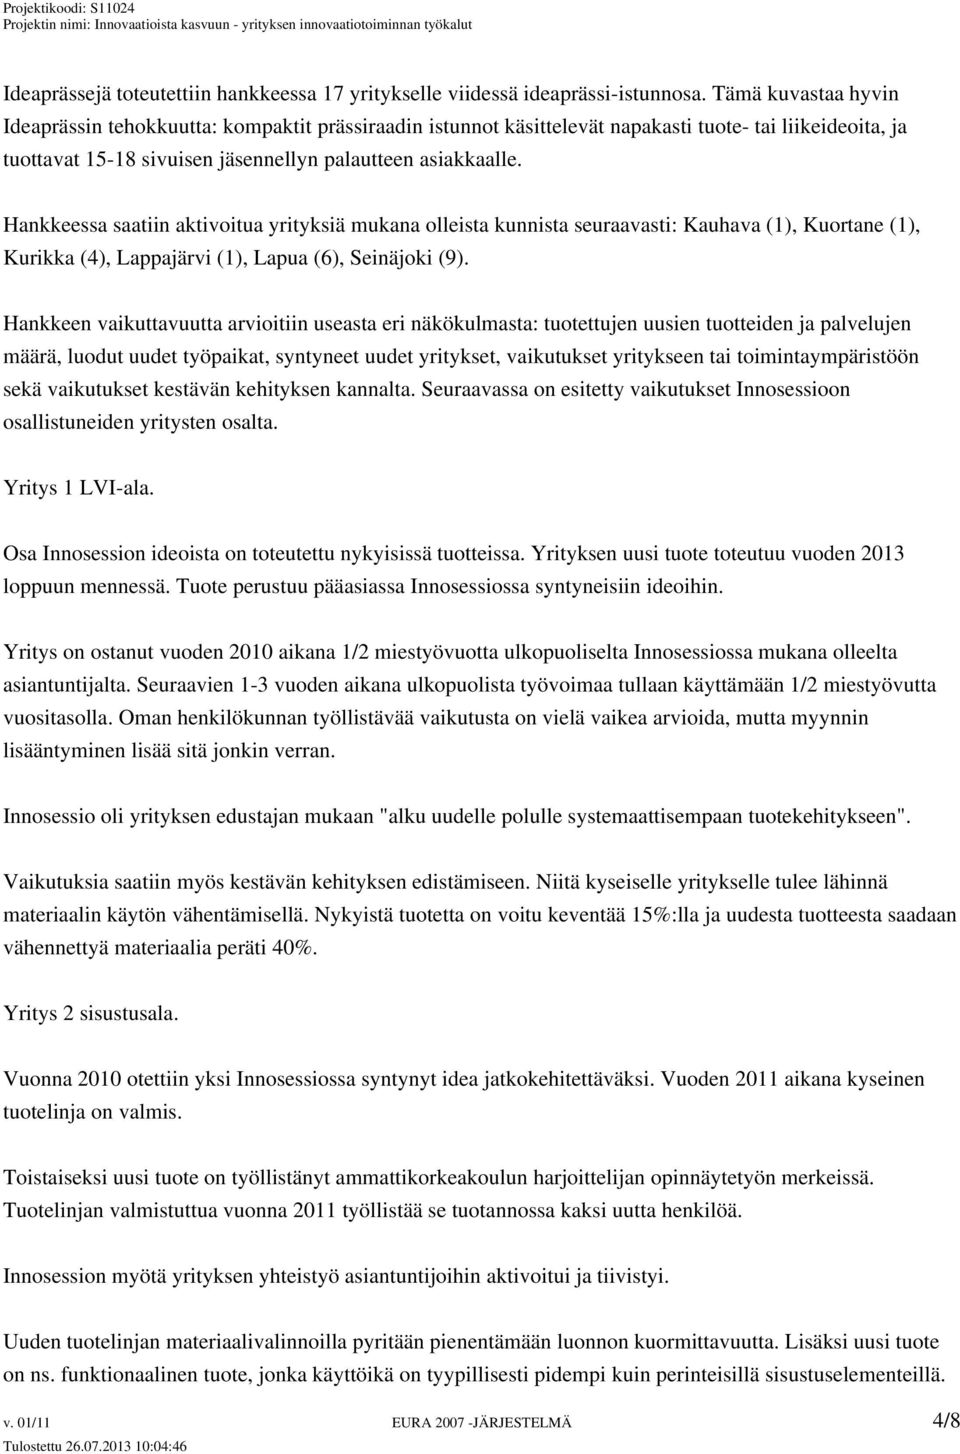 Hankkeessa saatiin aktivoitua yrityksiä mukana olleista kunnista seuraavasti: Kauhava (1), Kuortane (1), Kurikka (4), Lappajärvi (1), Lapua (6), Seinäjoki (9).